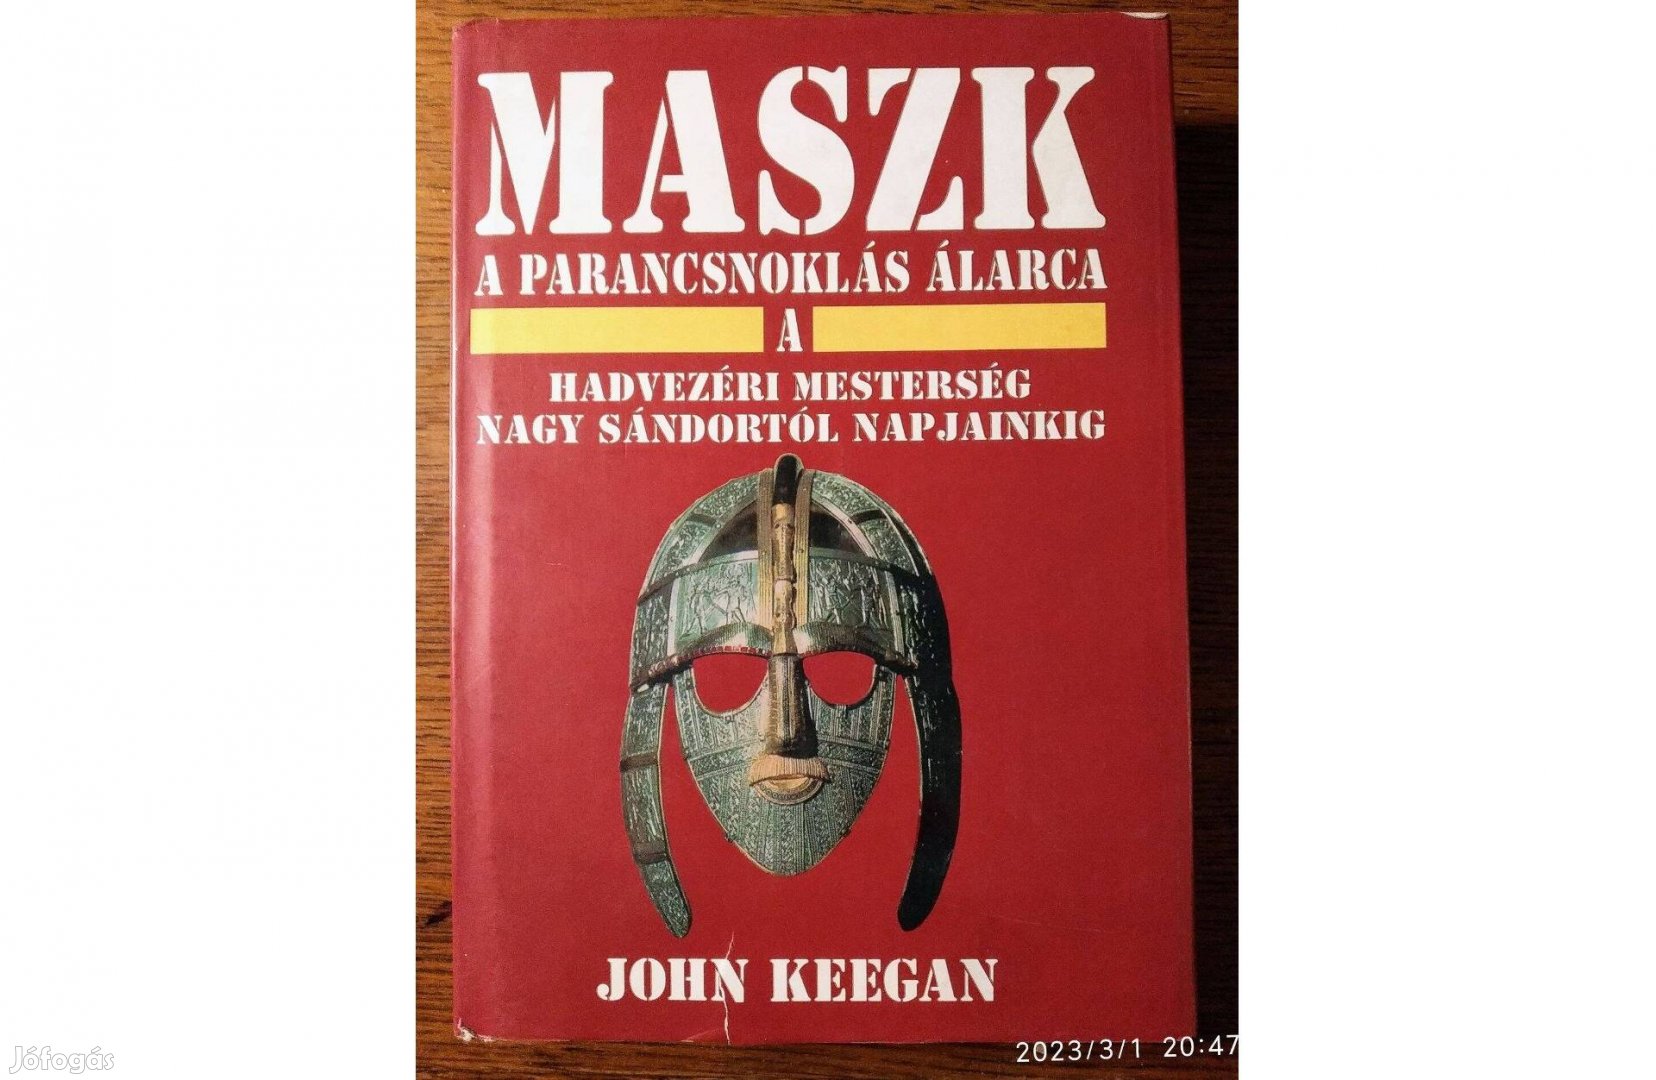 Maszk - A parancsnoklás álarca (A hadvezéri mesterség John Keegan